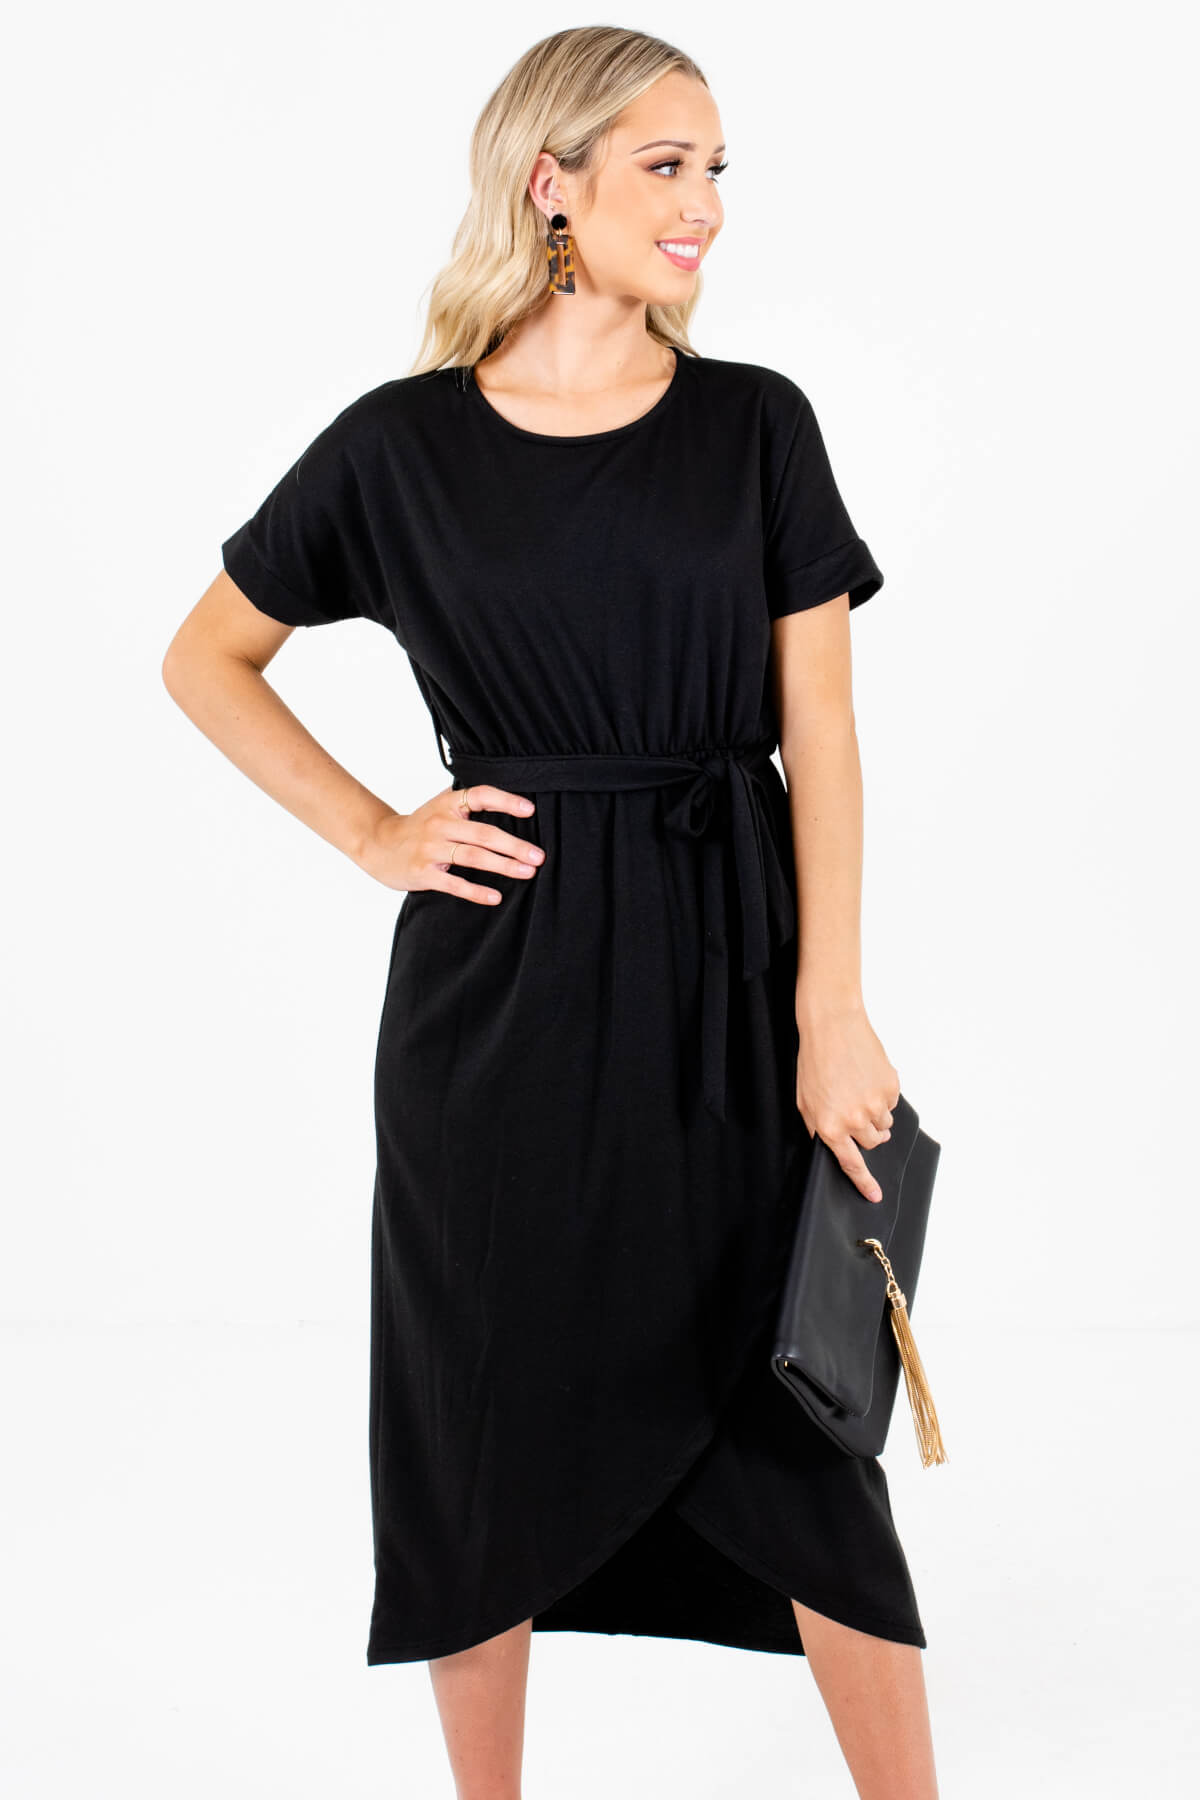 Black Faux Wrap Style Boutique Knee-Length Dresses for Women